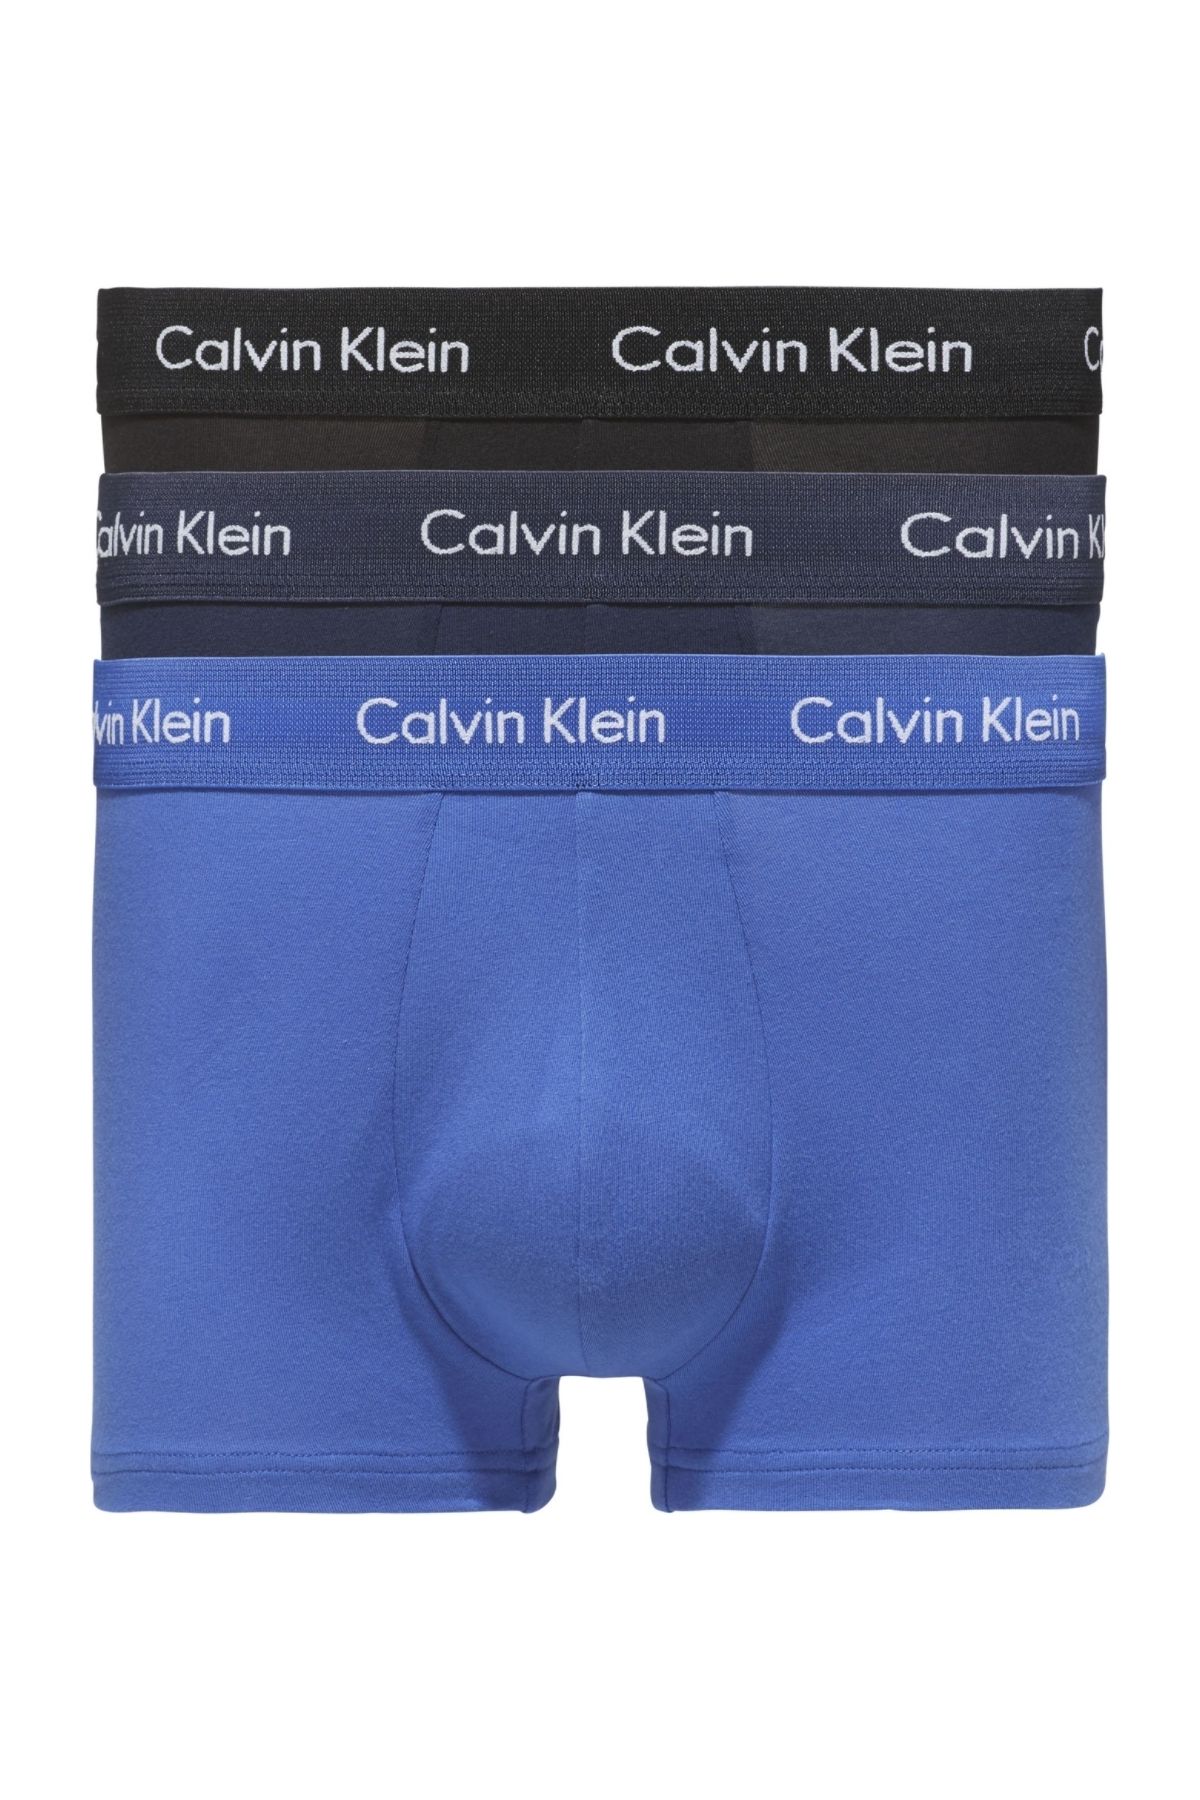 Calvin Klein Erkek Marka Logolu Elastik Bantlı Günlük Kullanıma Uygun 4ku Boxer U2664g-4ku